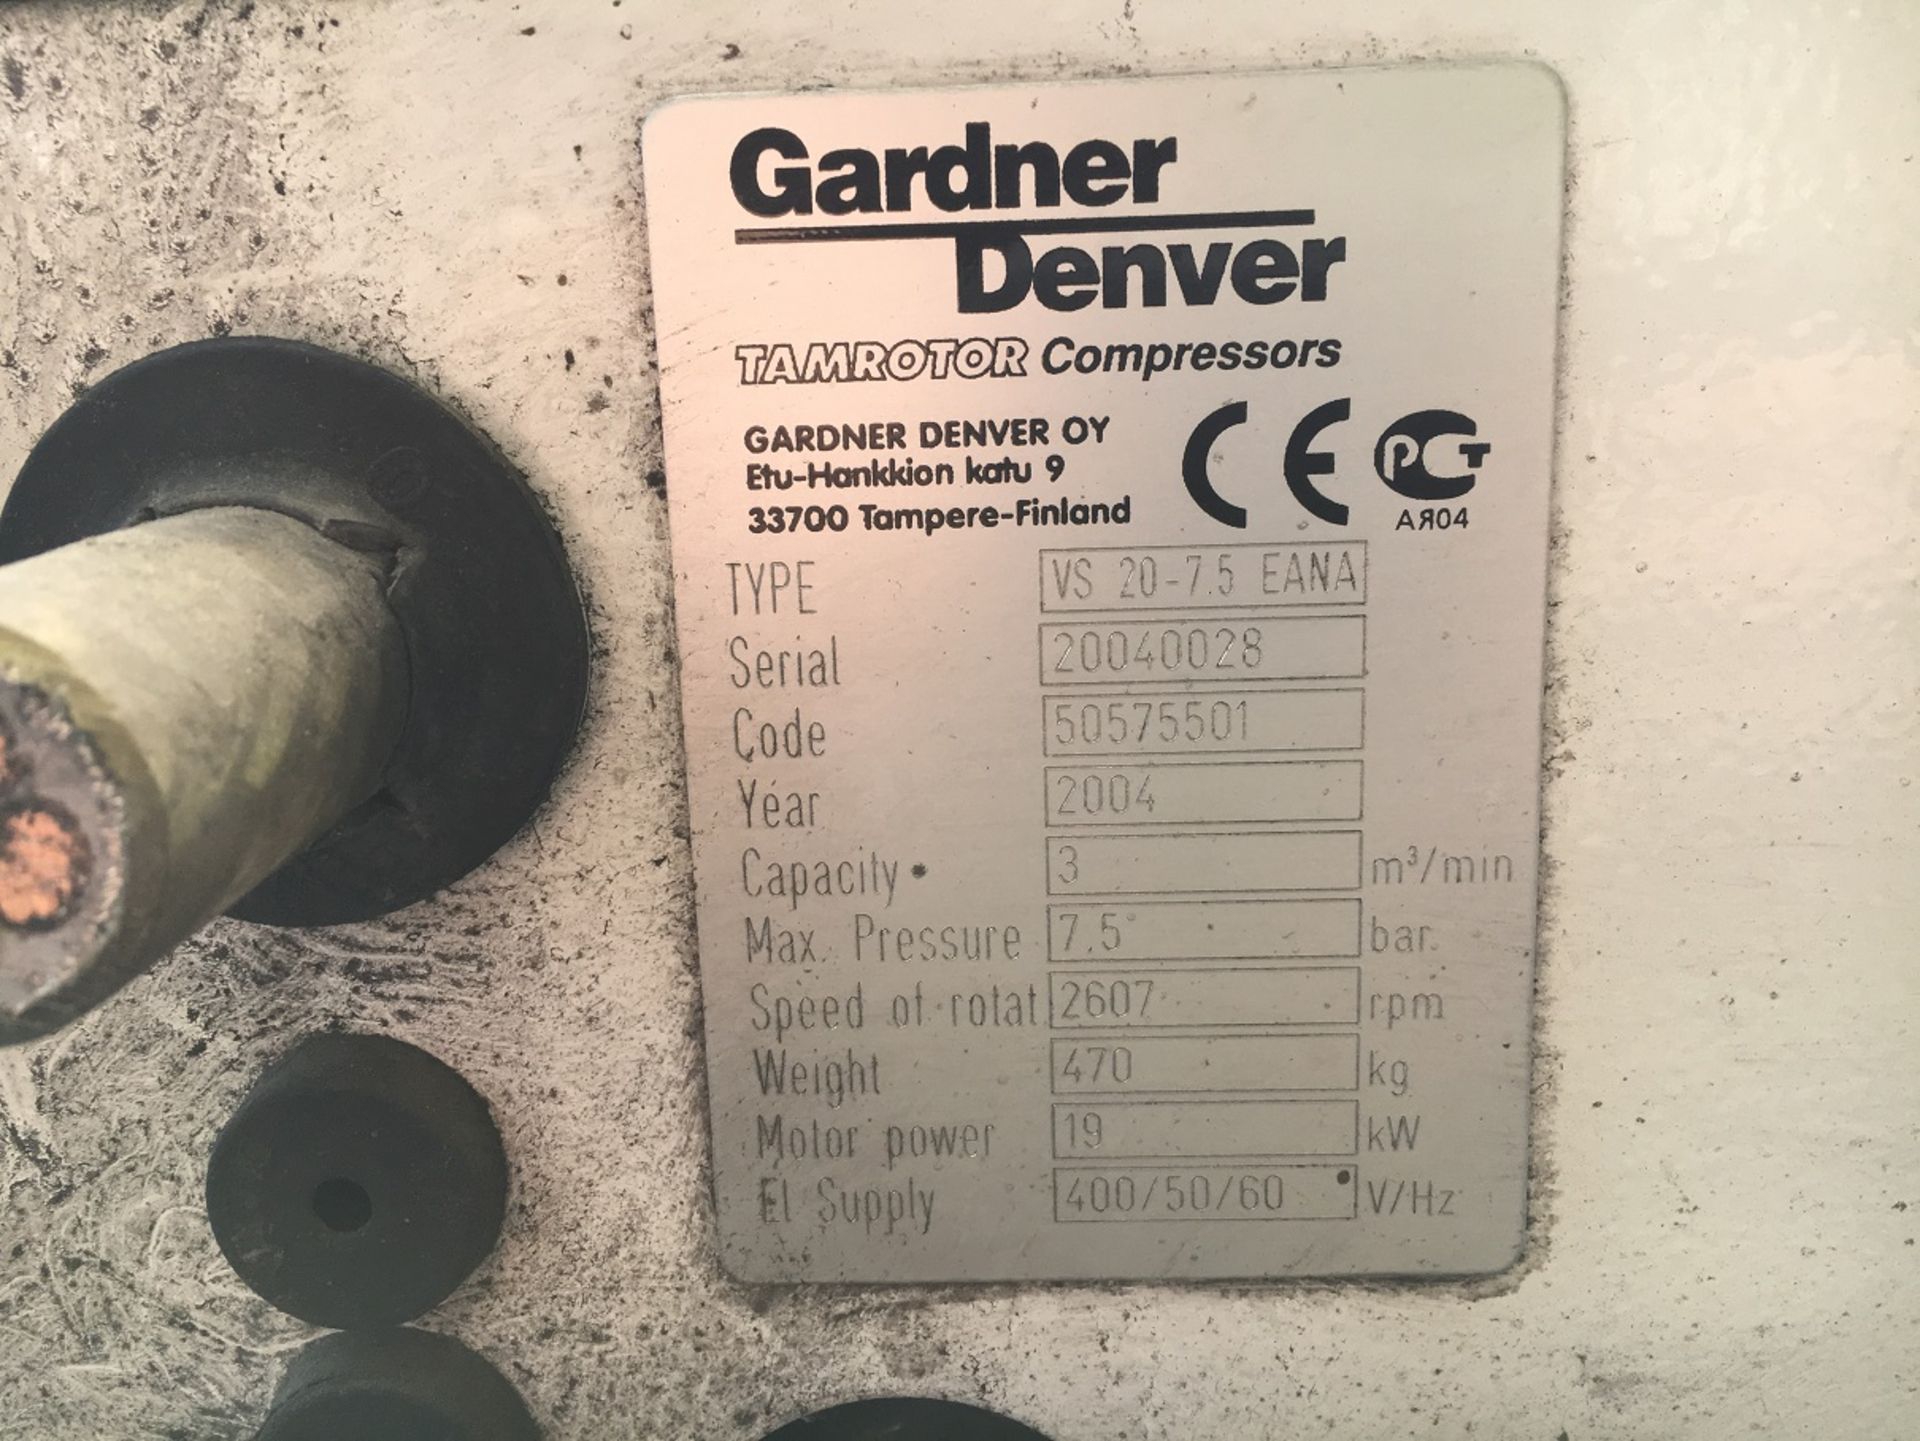 2004 GARDNER DENVER ELECTRA-SAVER VS 20-7.5 AIR COMPRESSOR *PLUS VAT* - Image 8 of 8